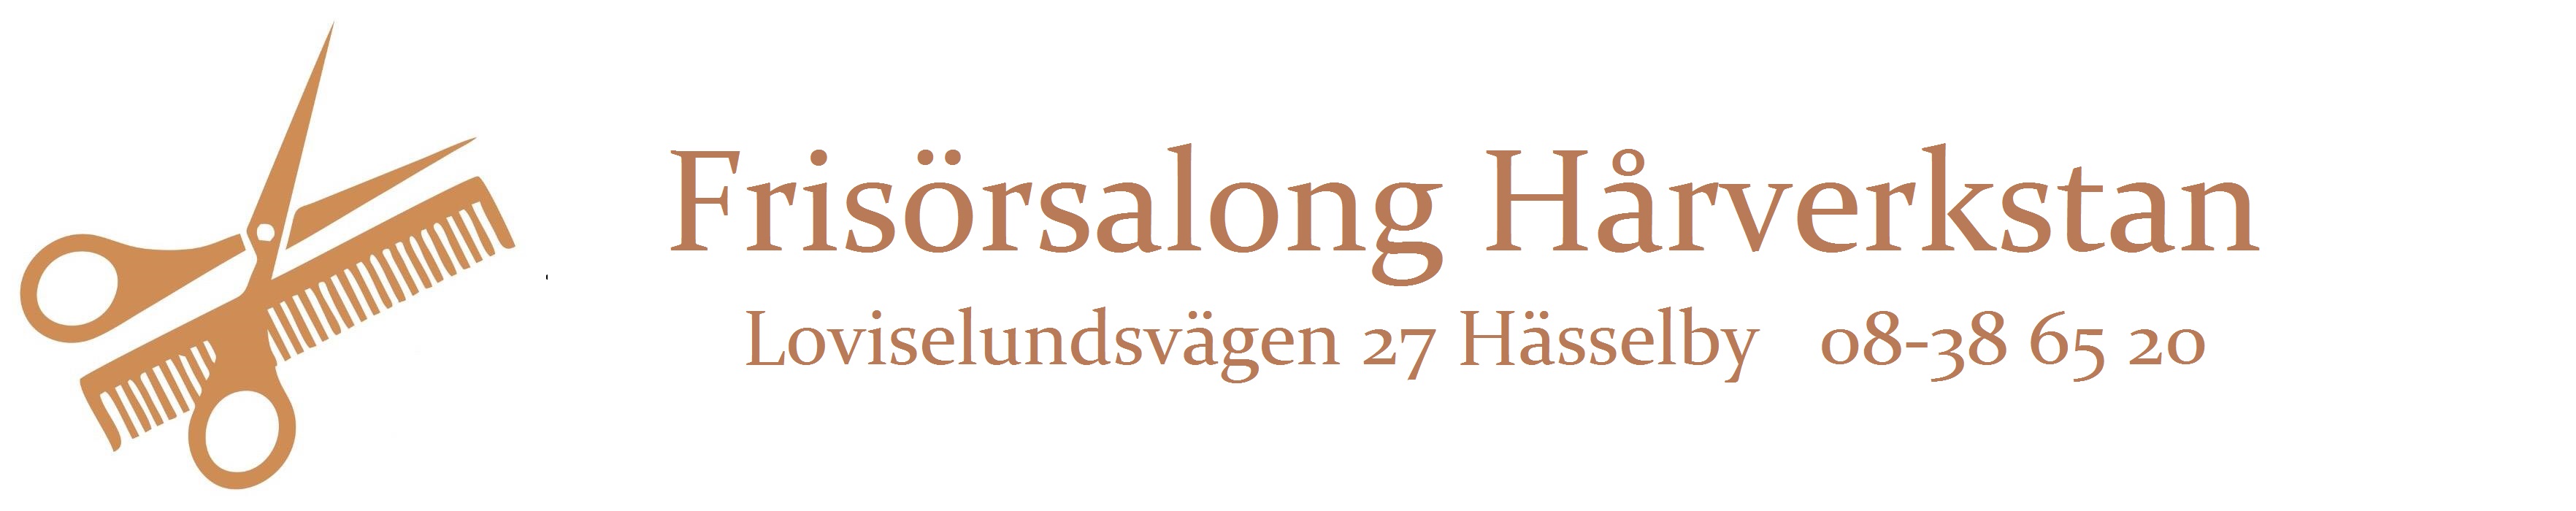 Frisörsalong Hässelby Hårverkstan